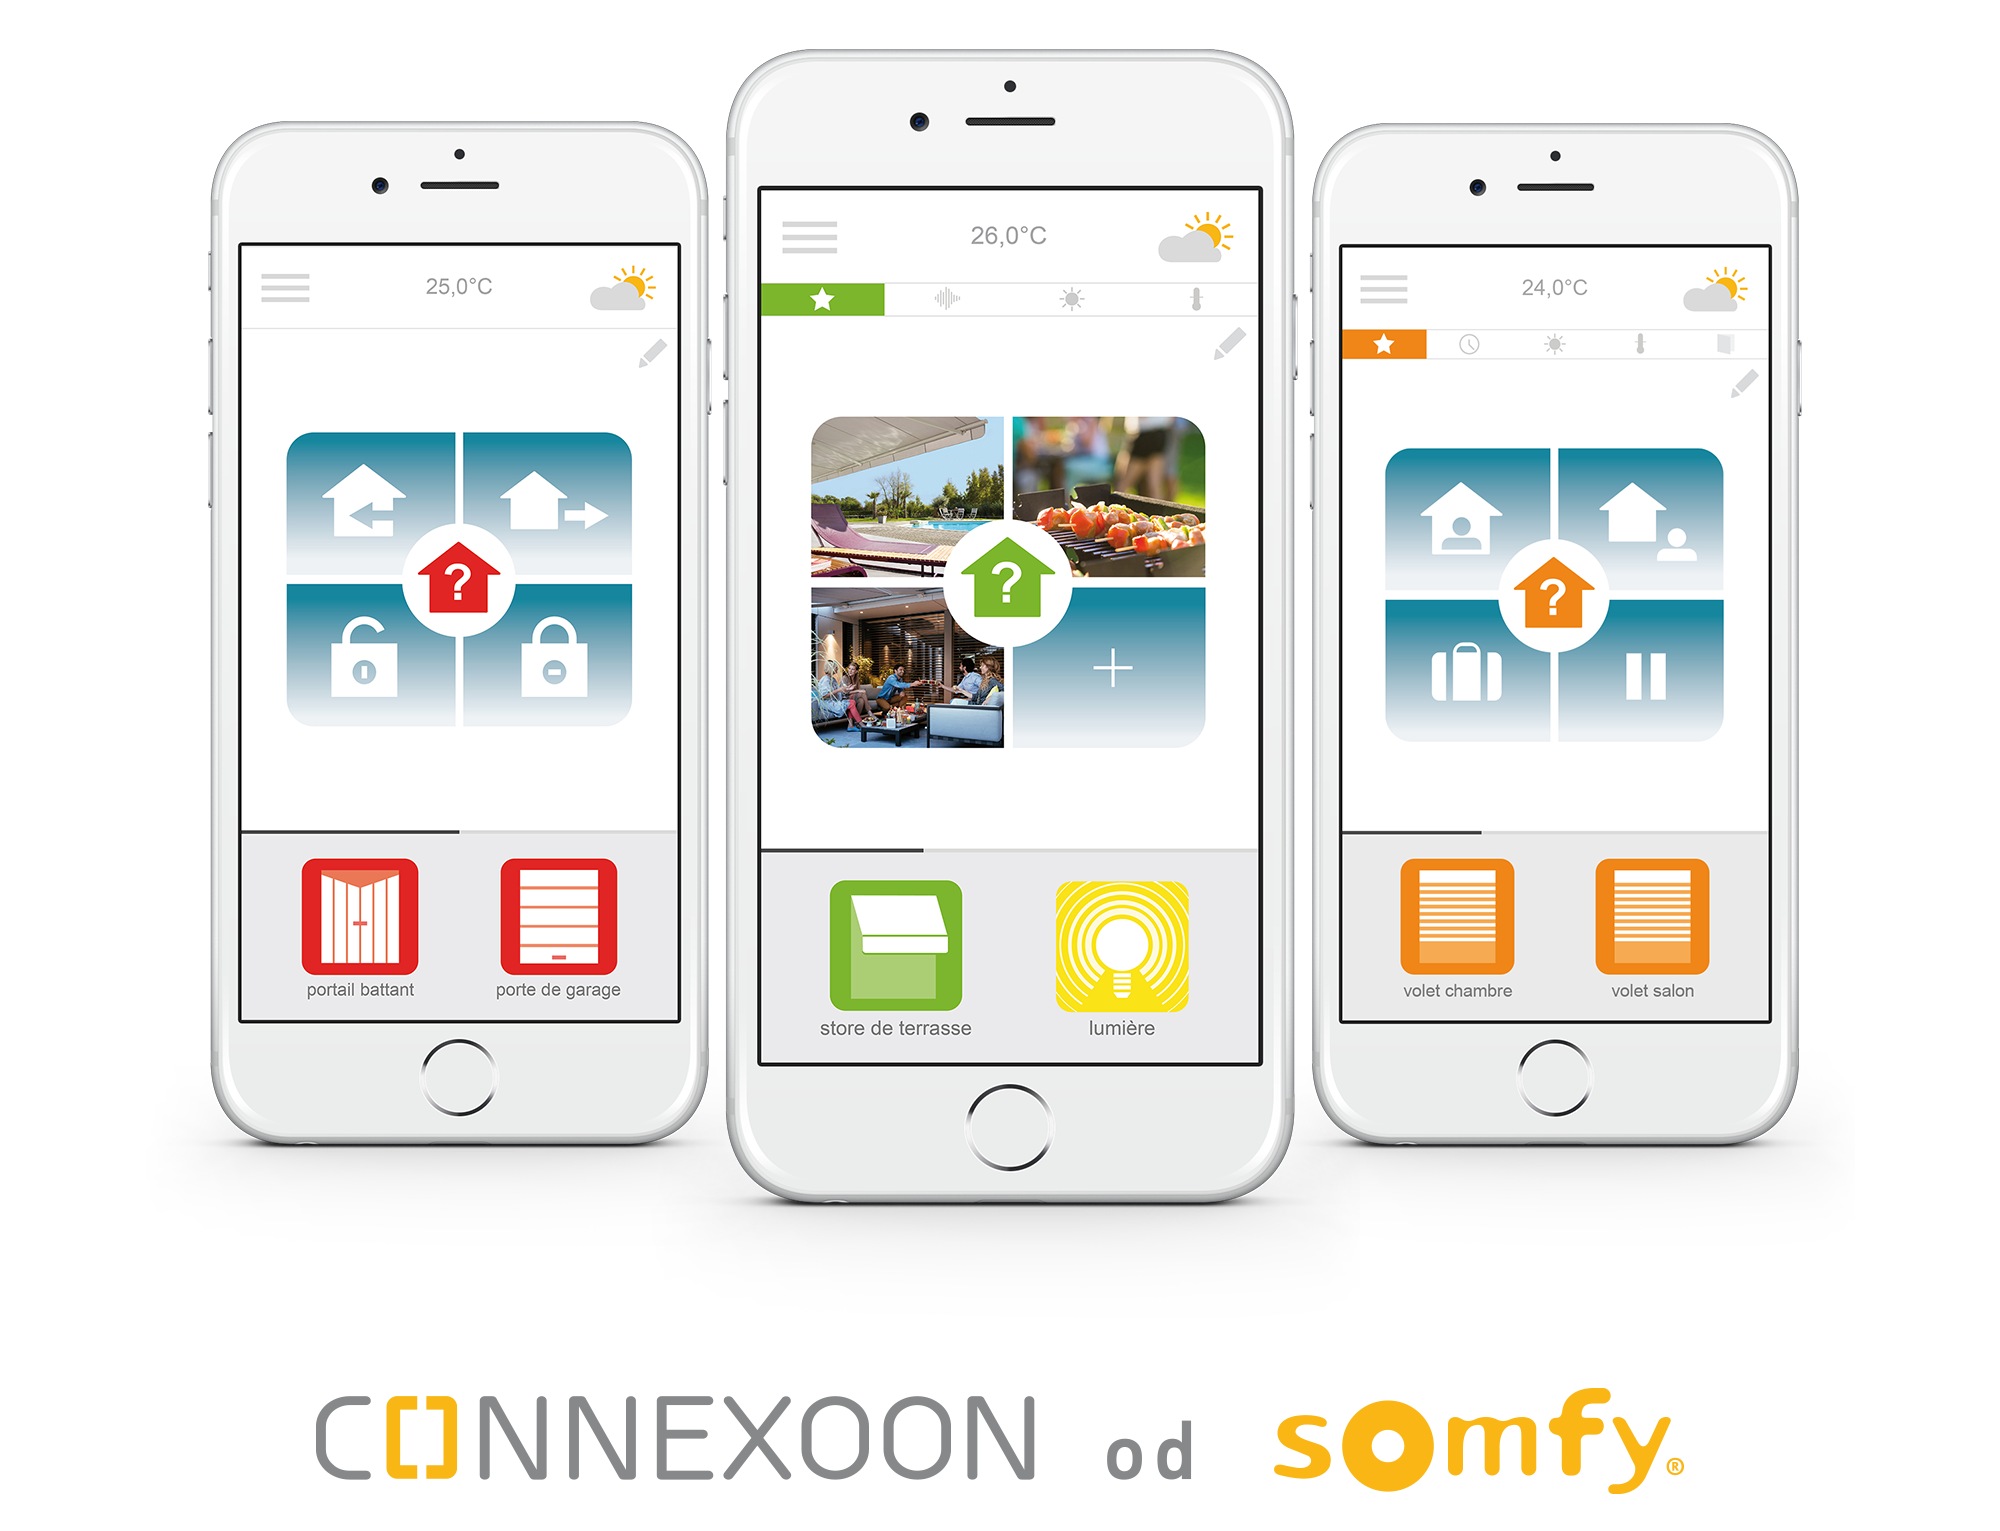 Connexoon je ideálním řešením, pokud chcete pro začátek ovládat např. jen vjezdovou bránu a garážová vrata.